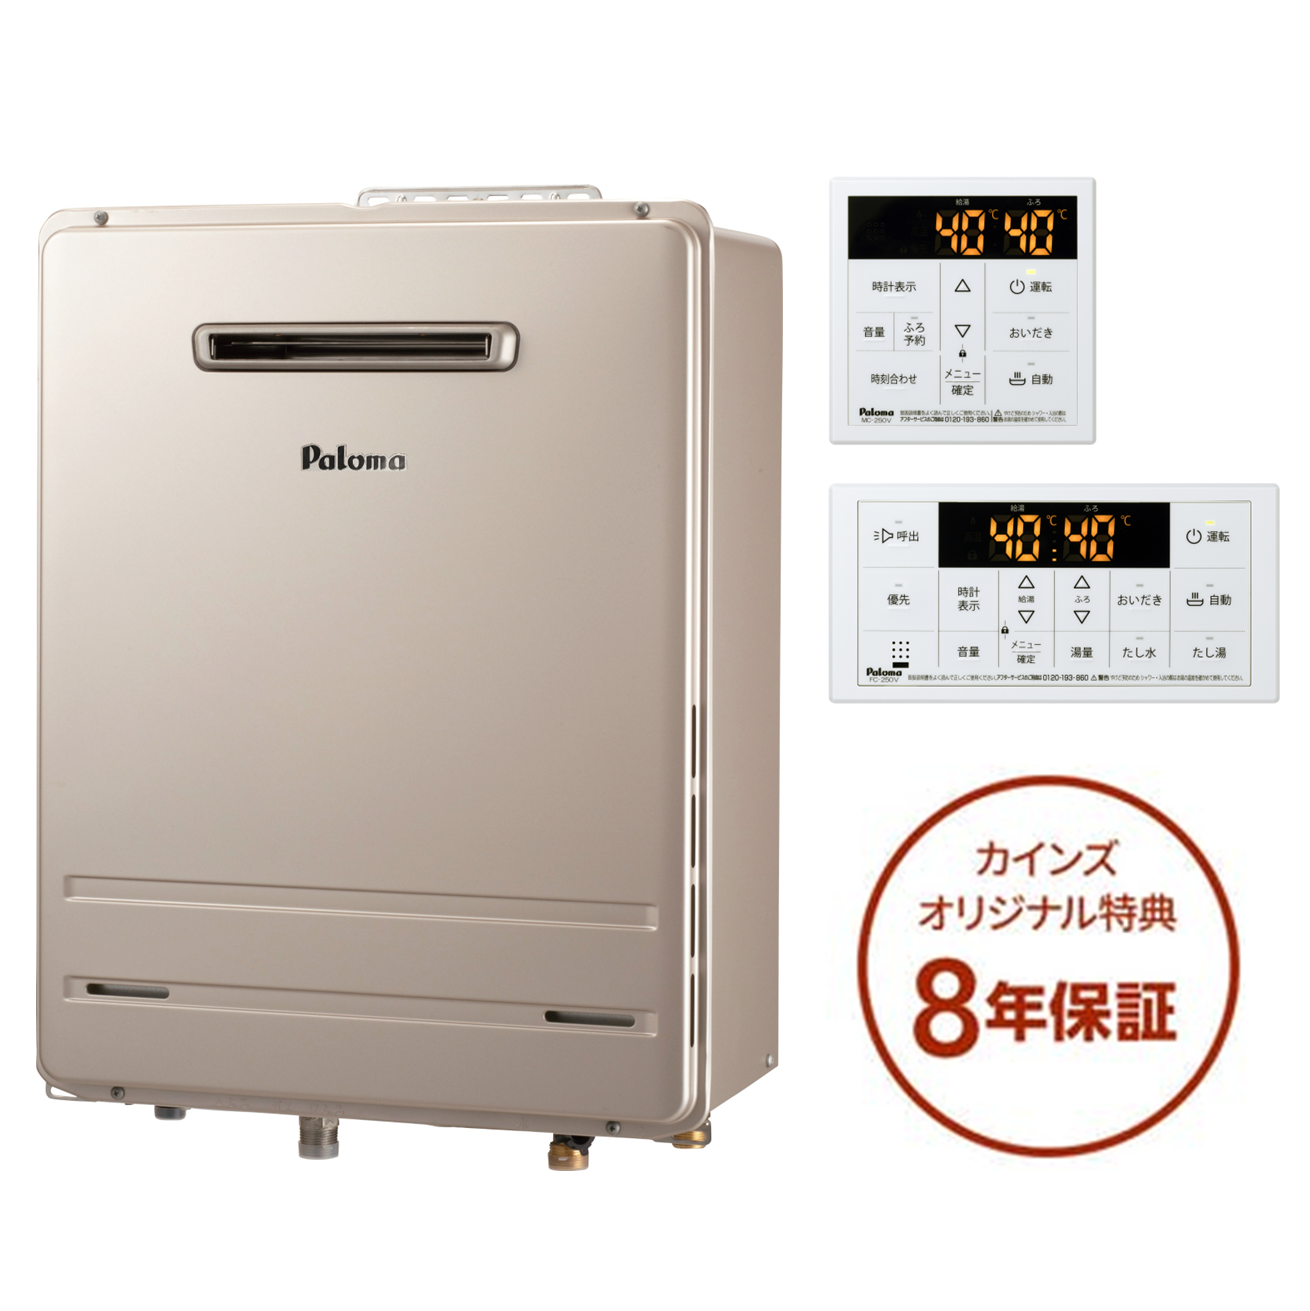 売り込み パロマ ガス給湯器リモコン：MFC-250V 浴室 台所リモコンセット